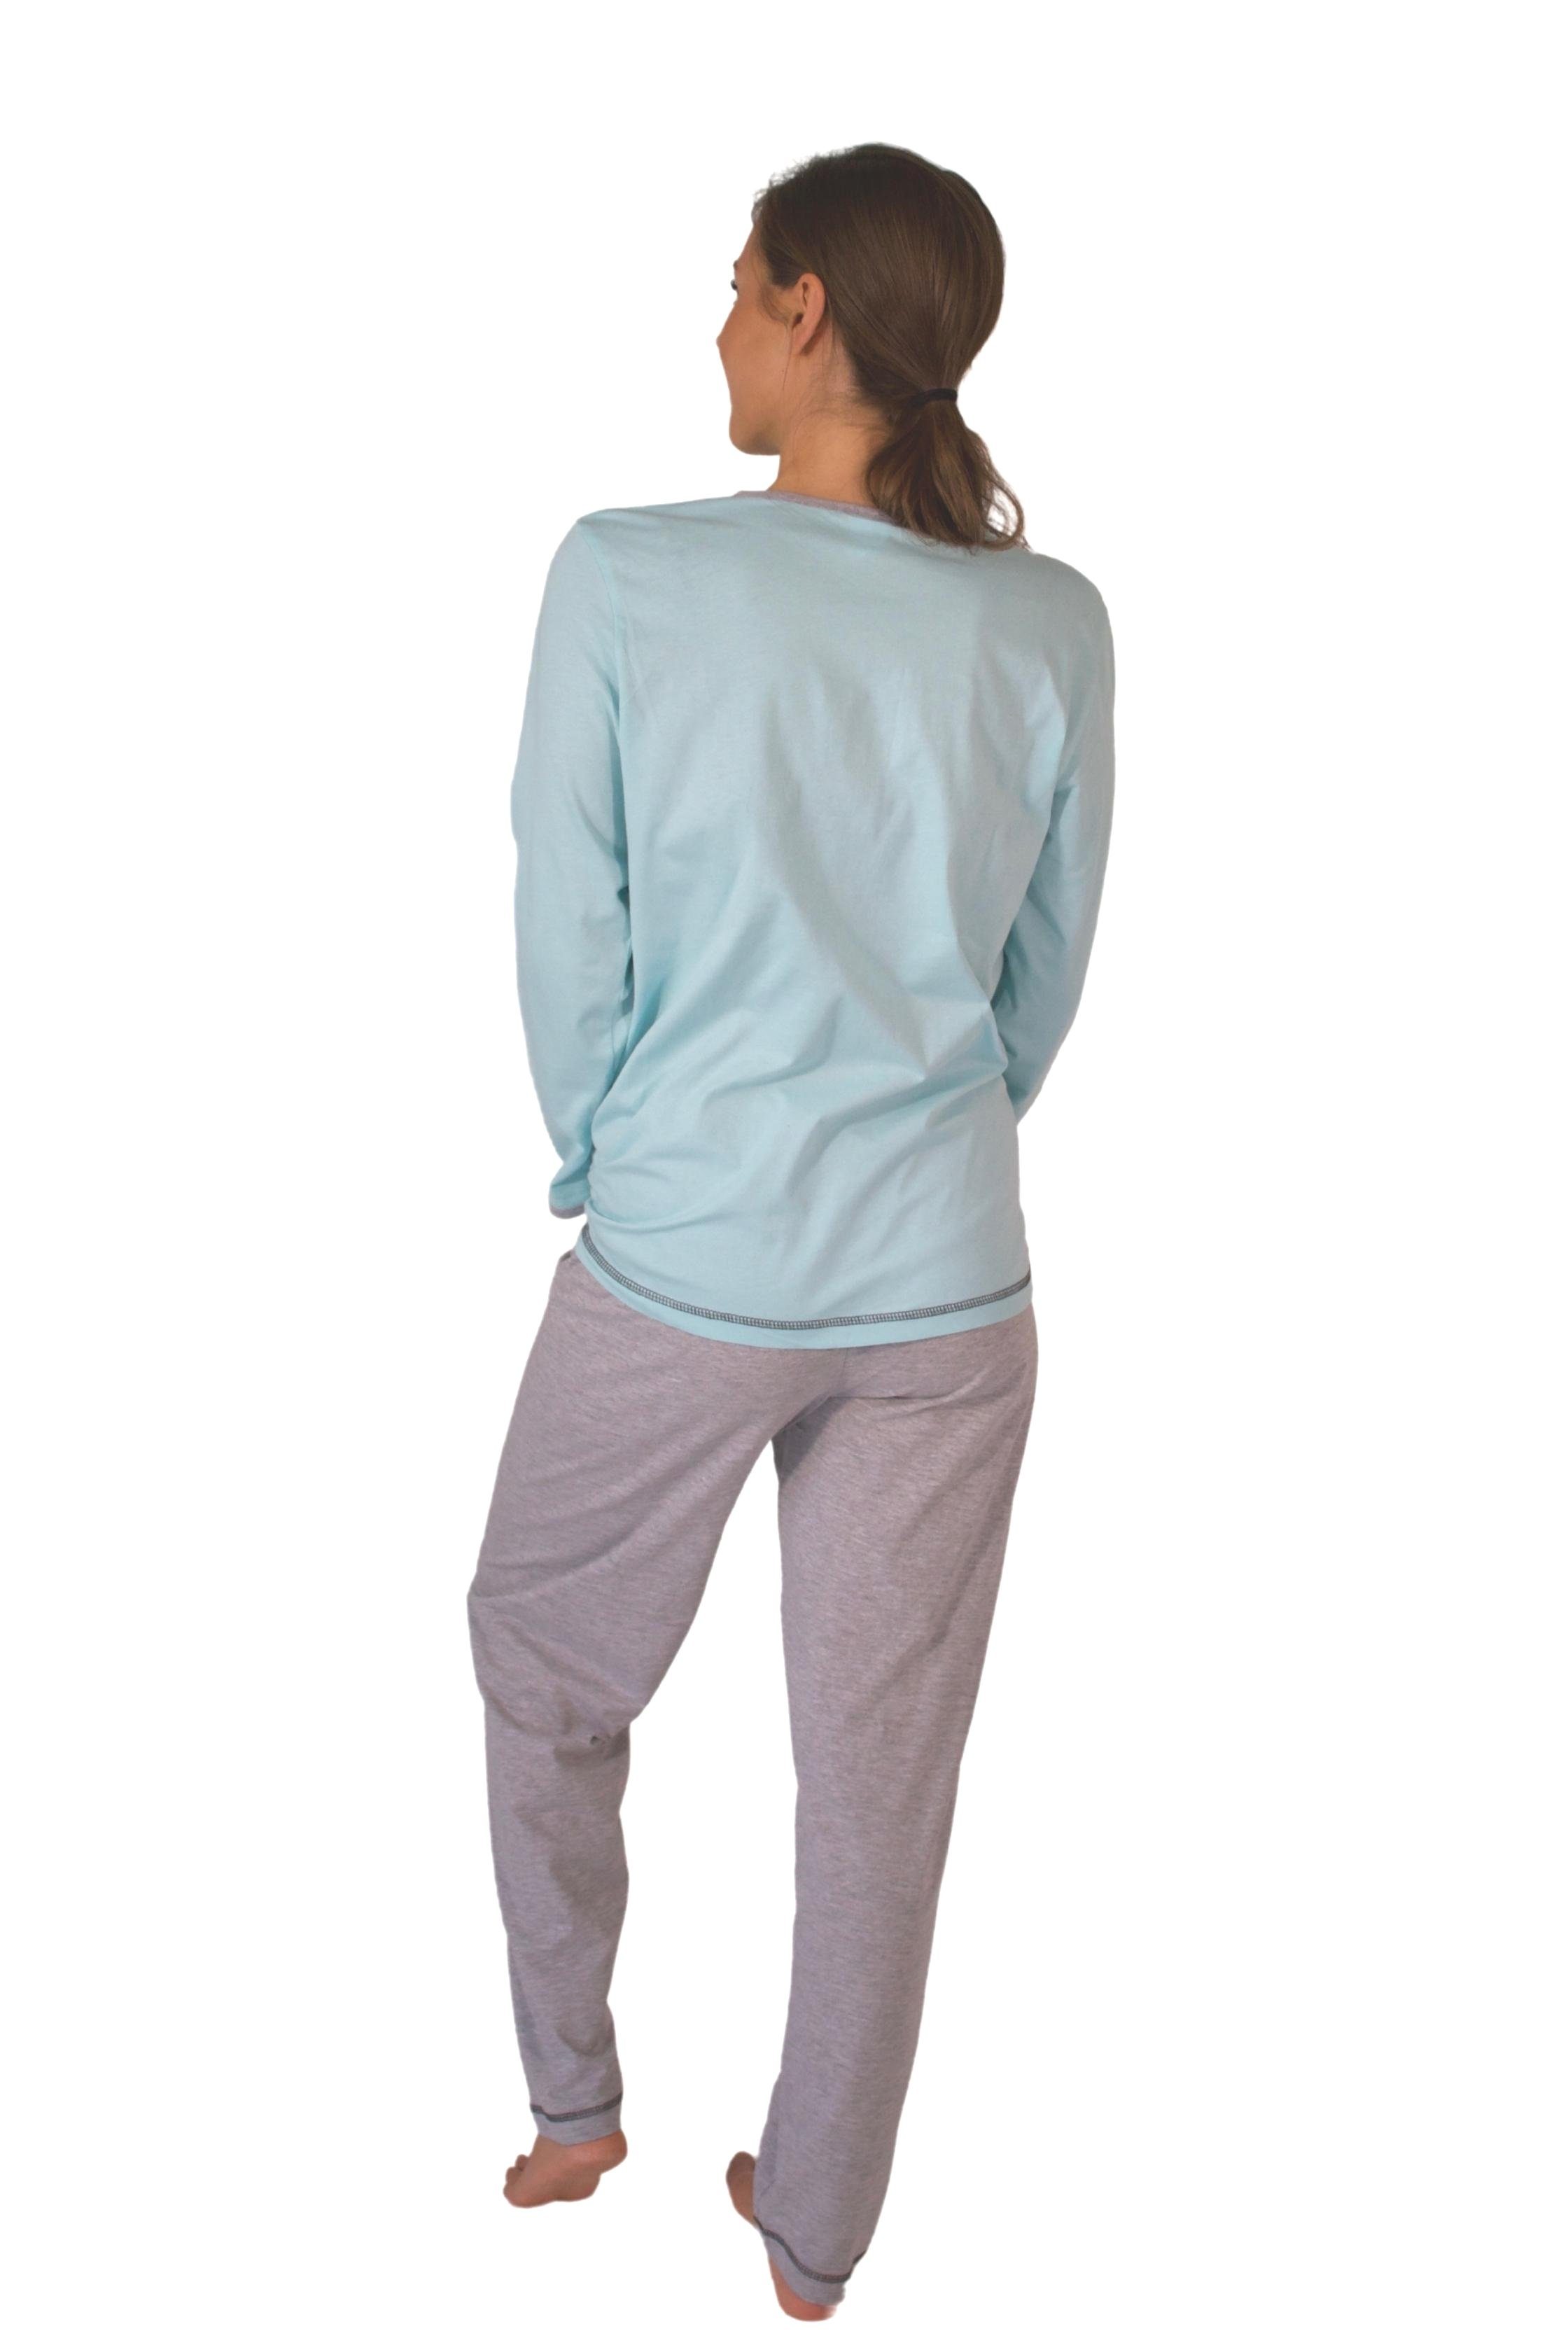 Qualität reiner Pyjama, Damen Pyjama aus Schlafanzug, Homewear Set DF230 Baumwolle-Jersey Consult-Tex (Packung)